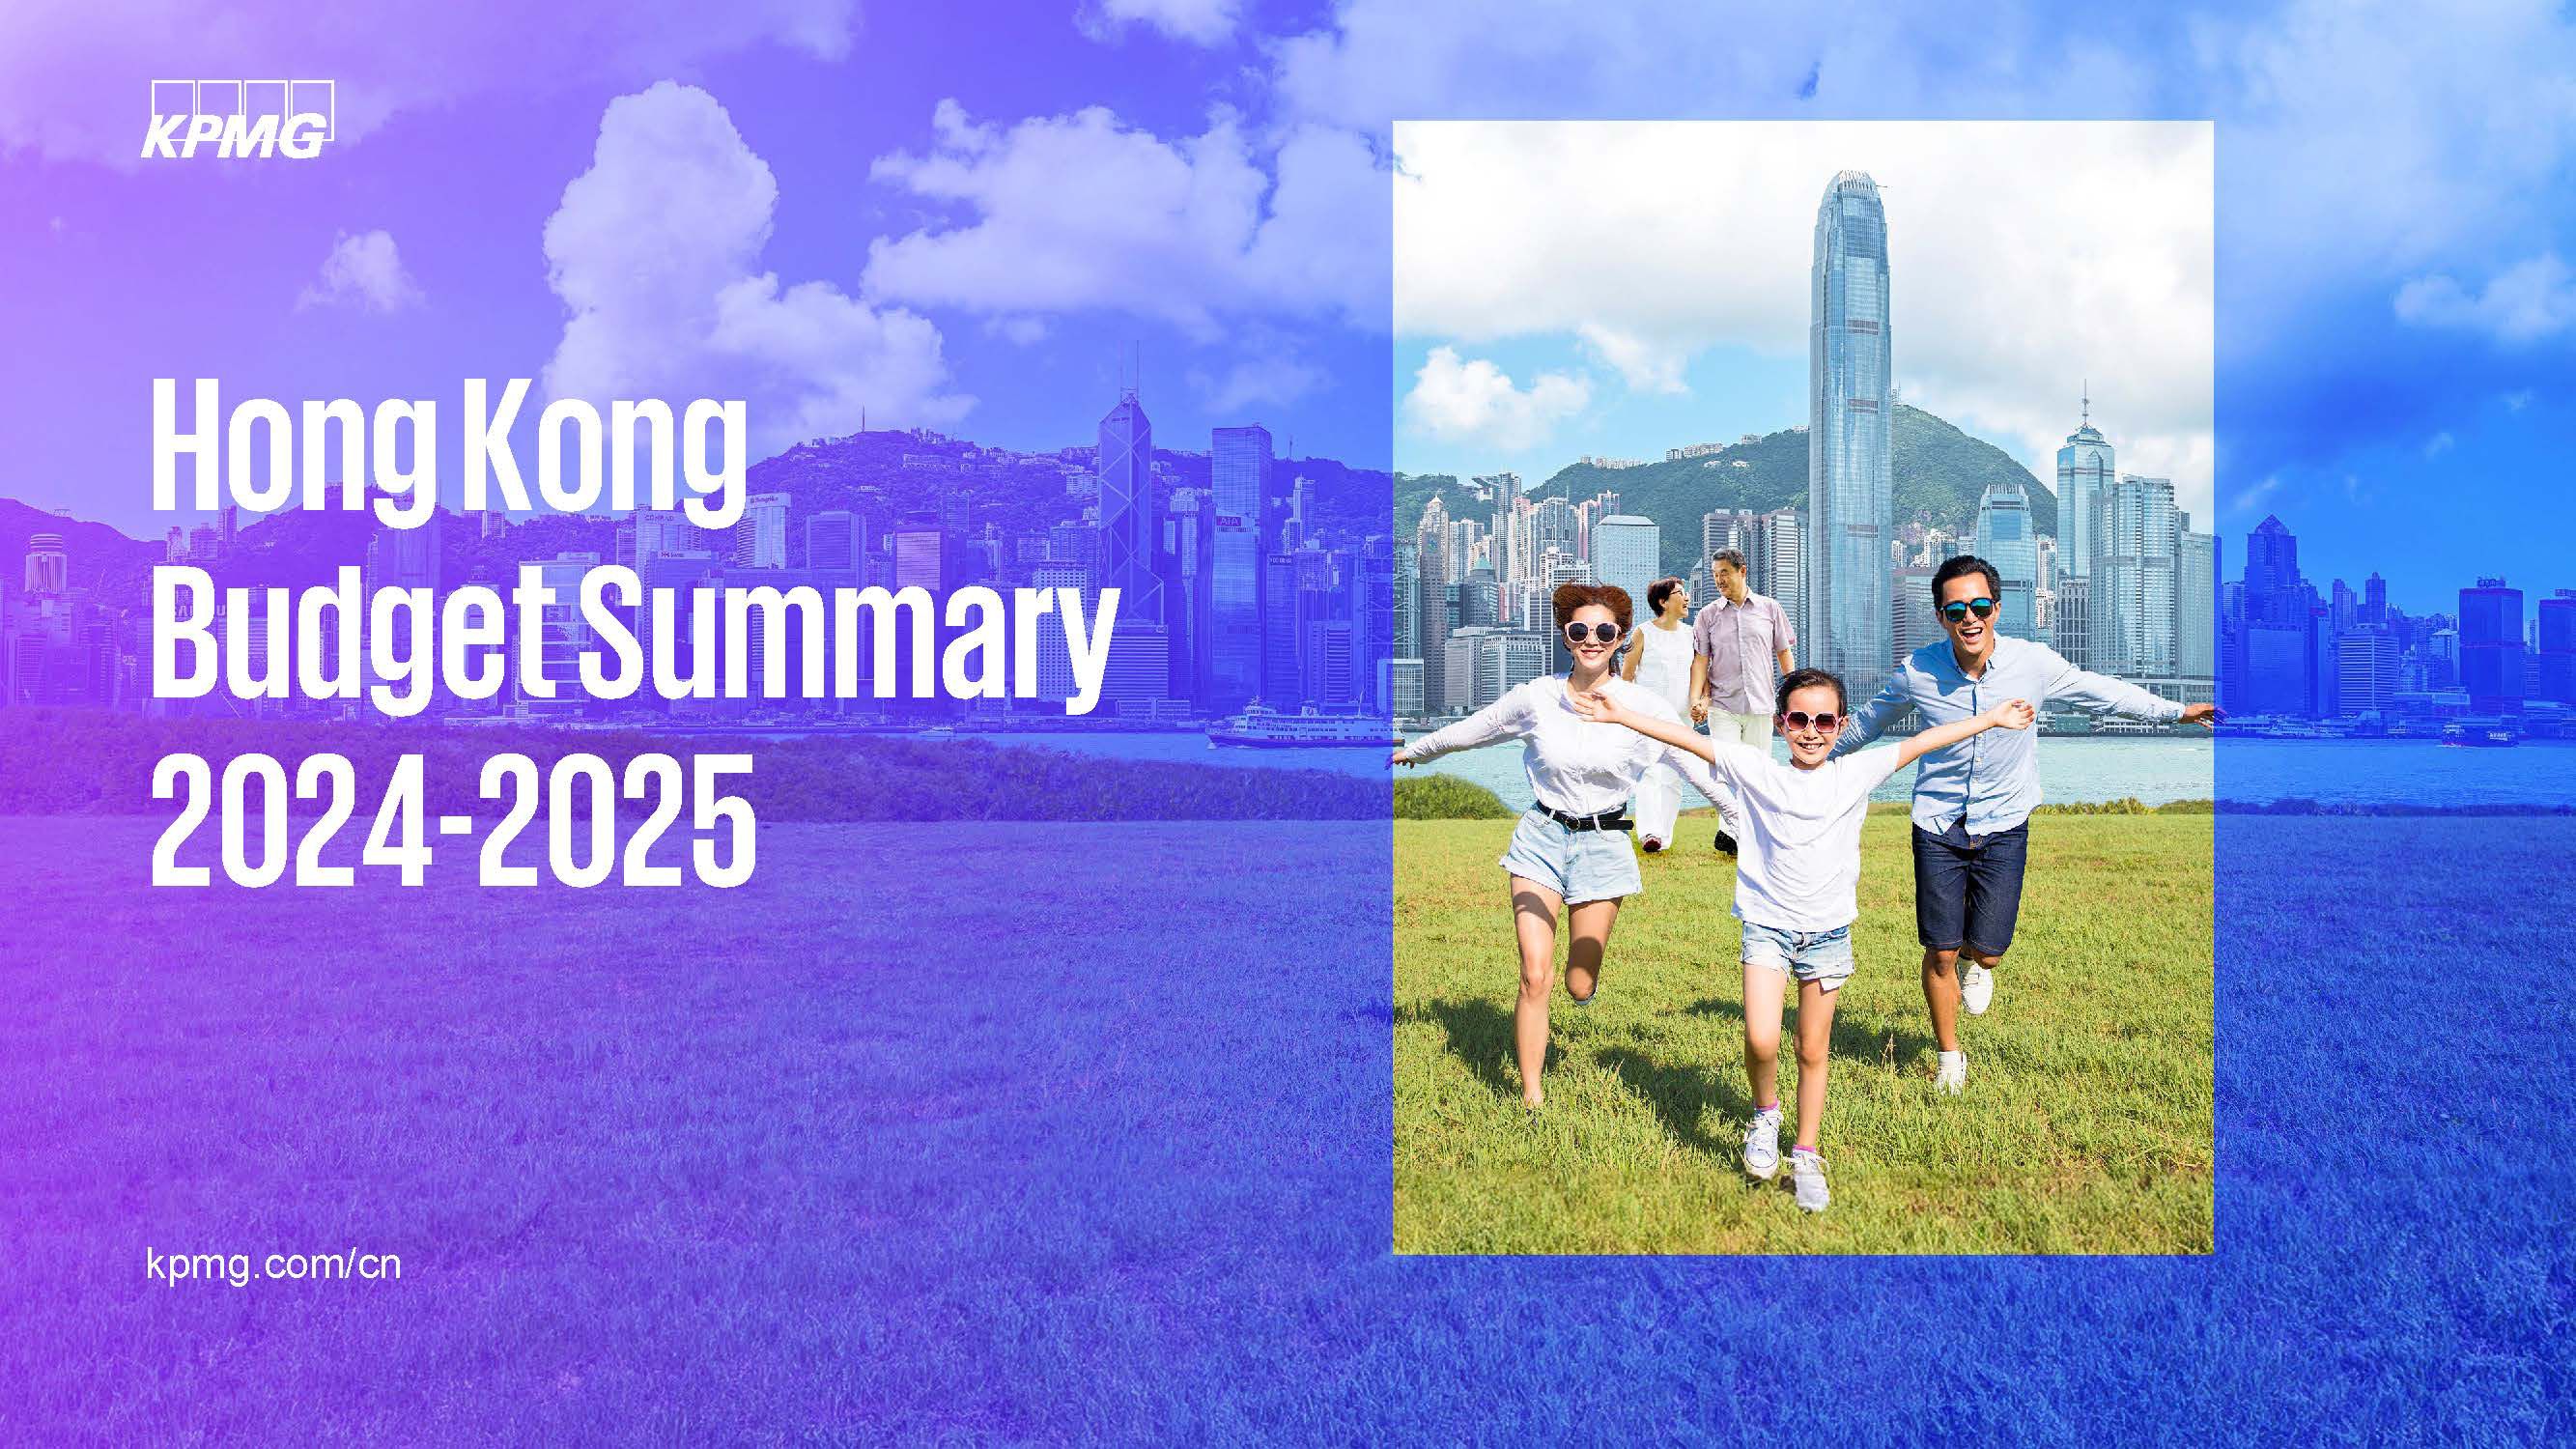 Hong Kong Budget Summary 2024-2025